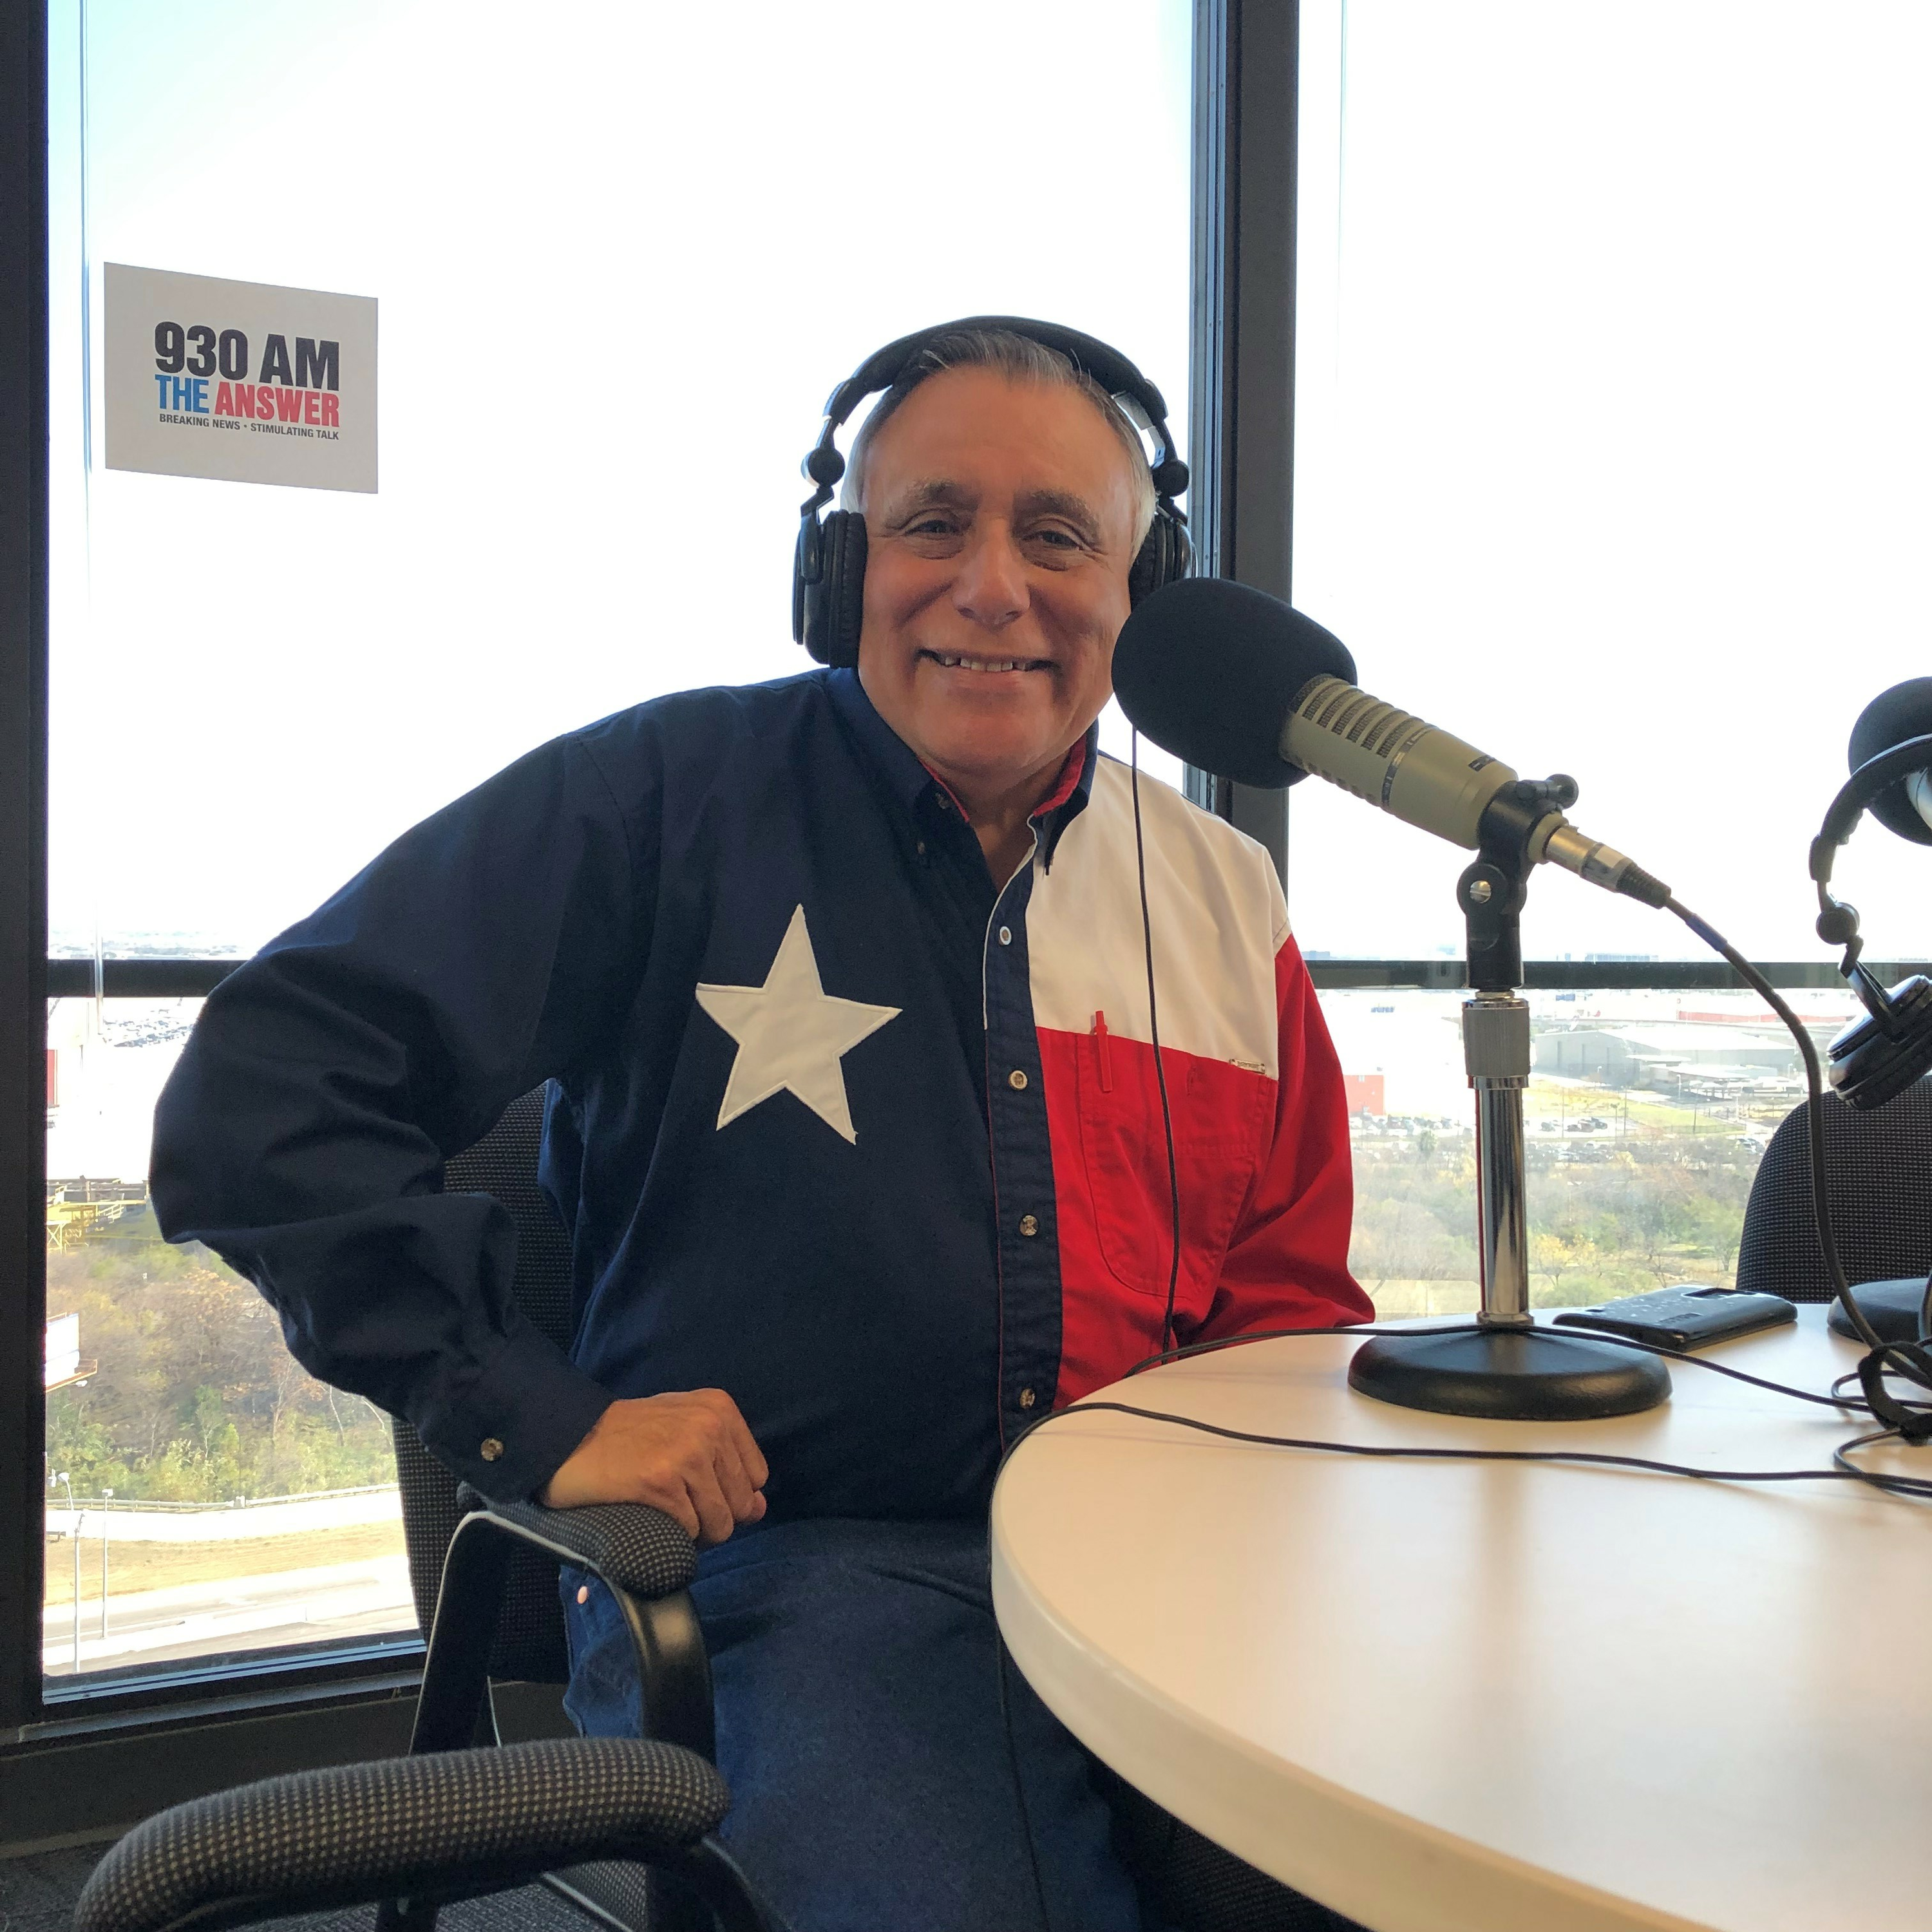 4-24-21 The El Conservador Radio with George Rodriguez